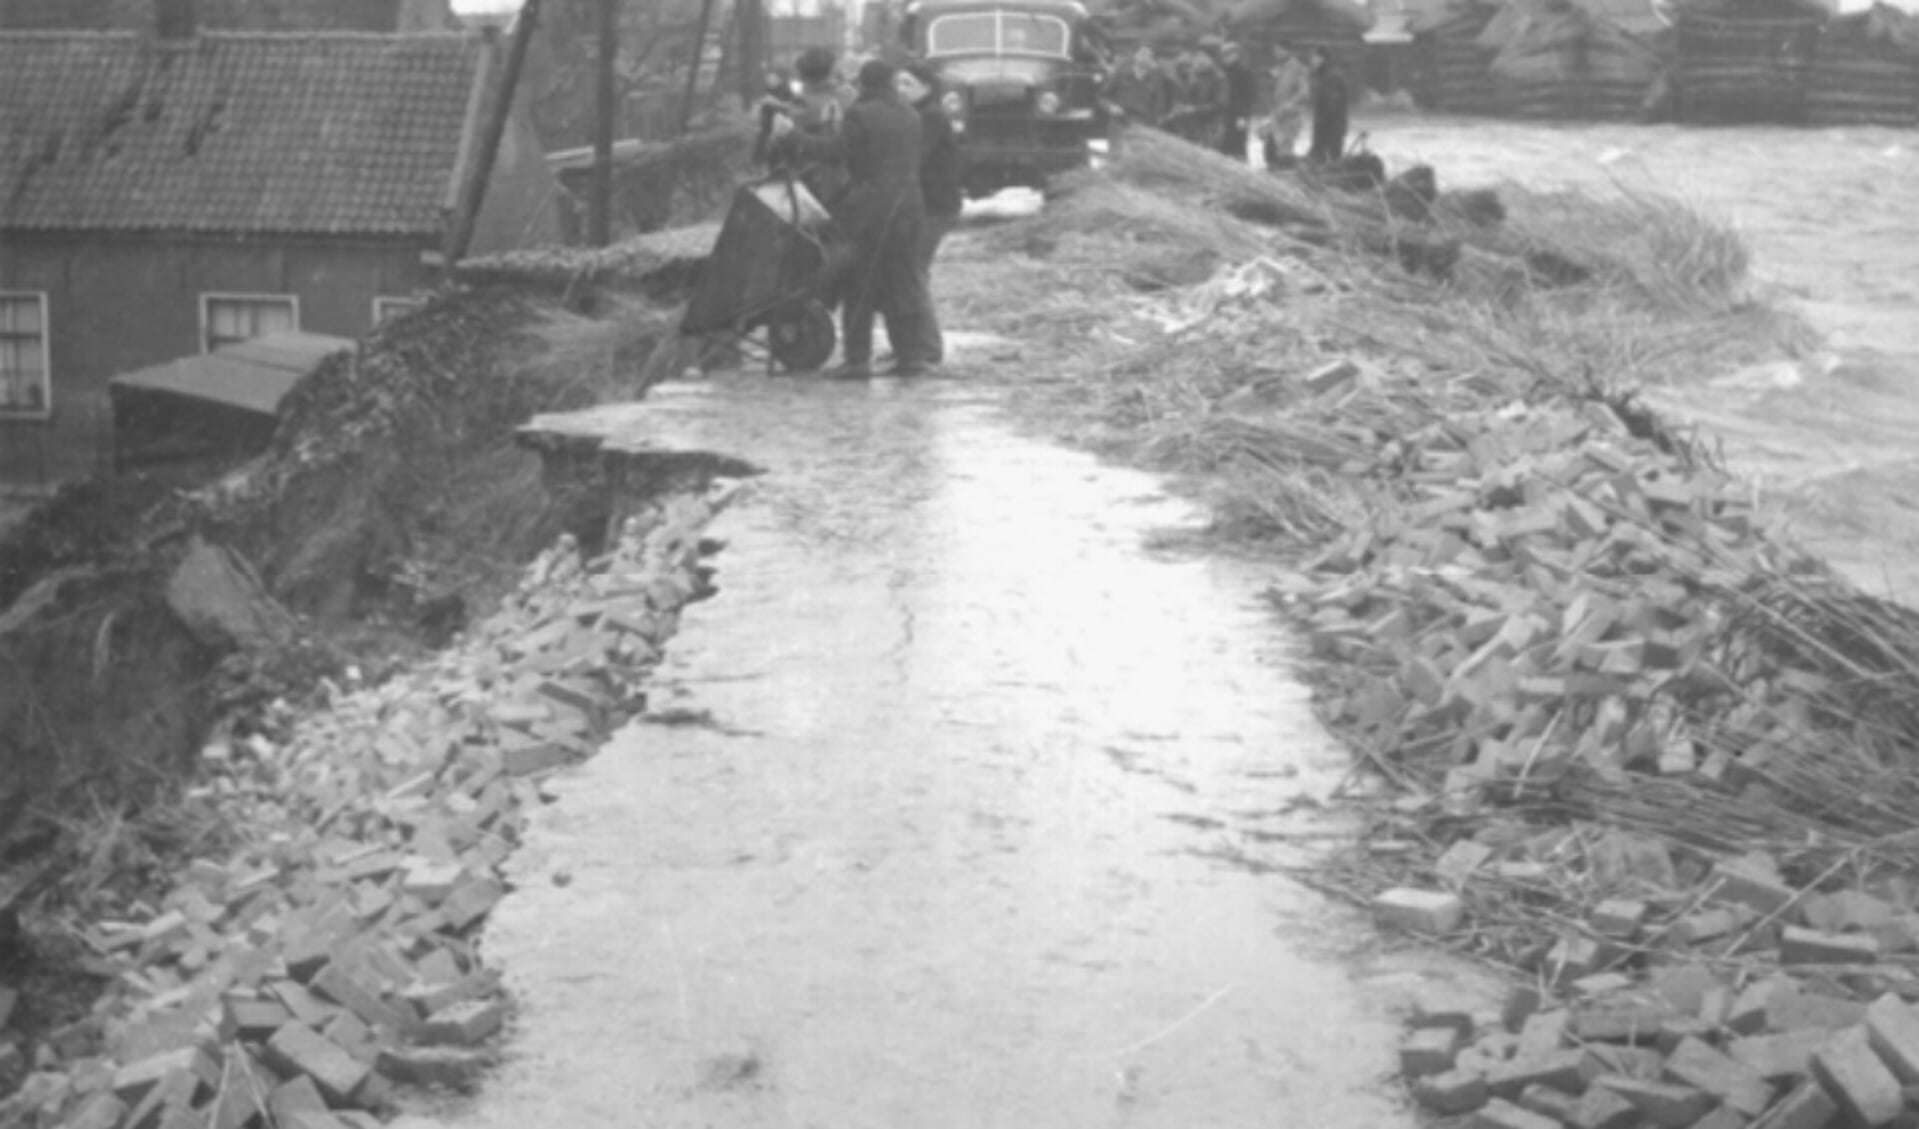 • De situatie in Gouderak in februari 1953, op het deel van de dijk dat tegenwoordig Middelblok heet. Met man en macht wist men hier een doorbraak te voorkomen.